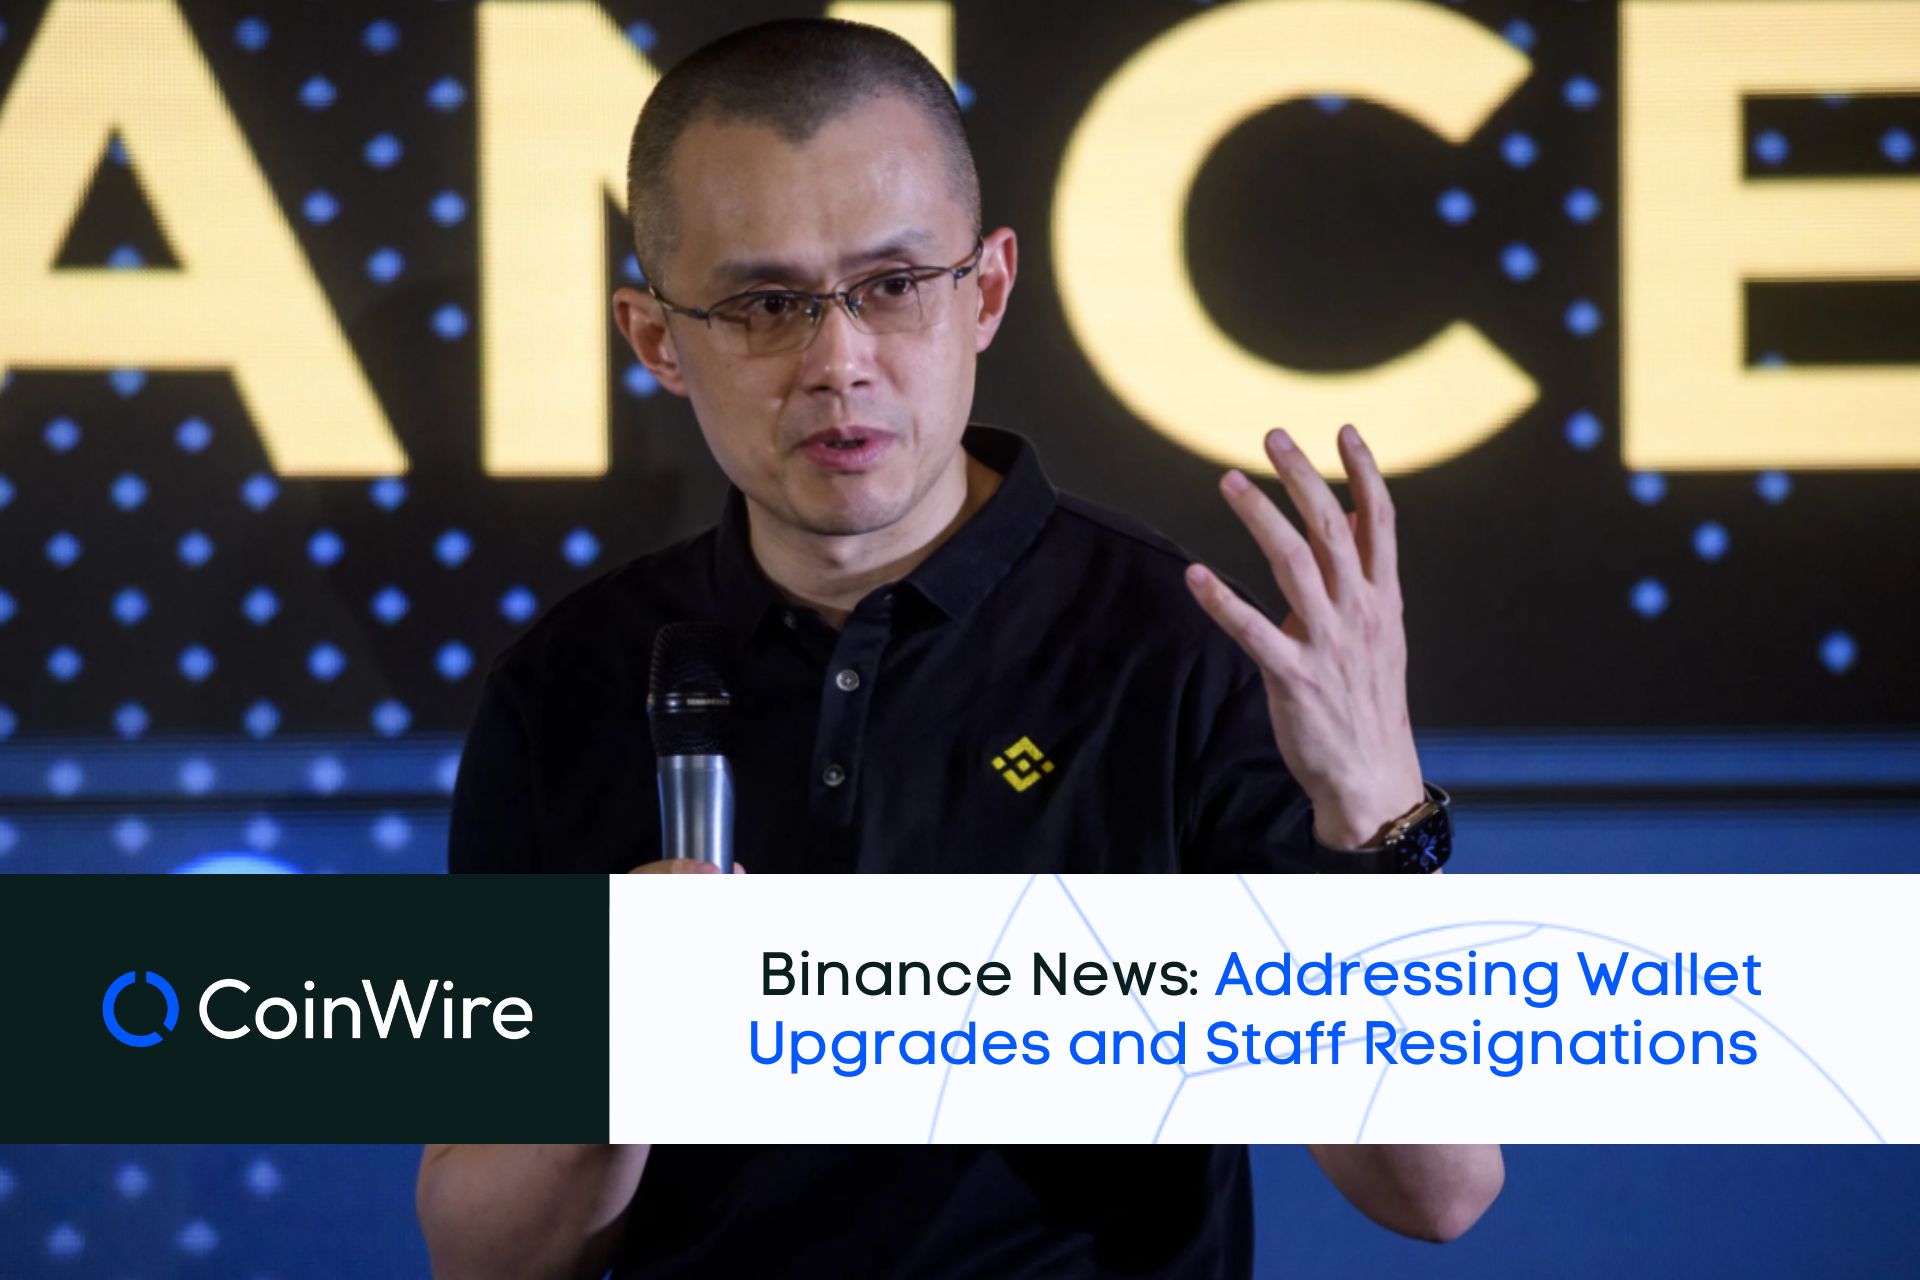 Binance News